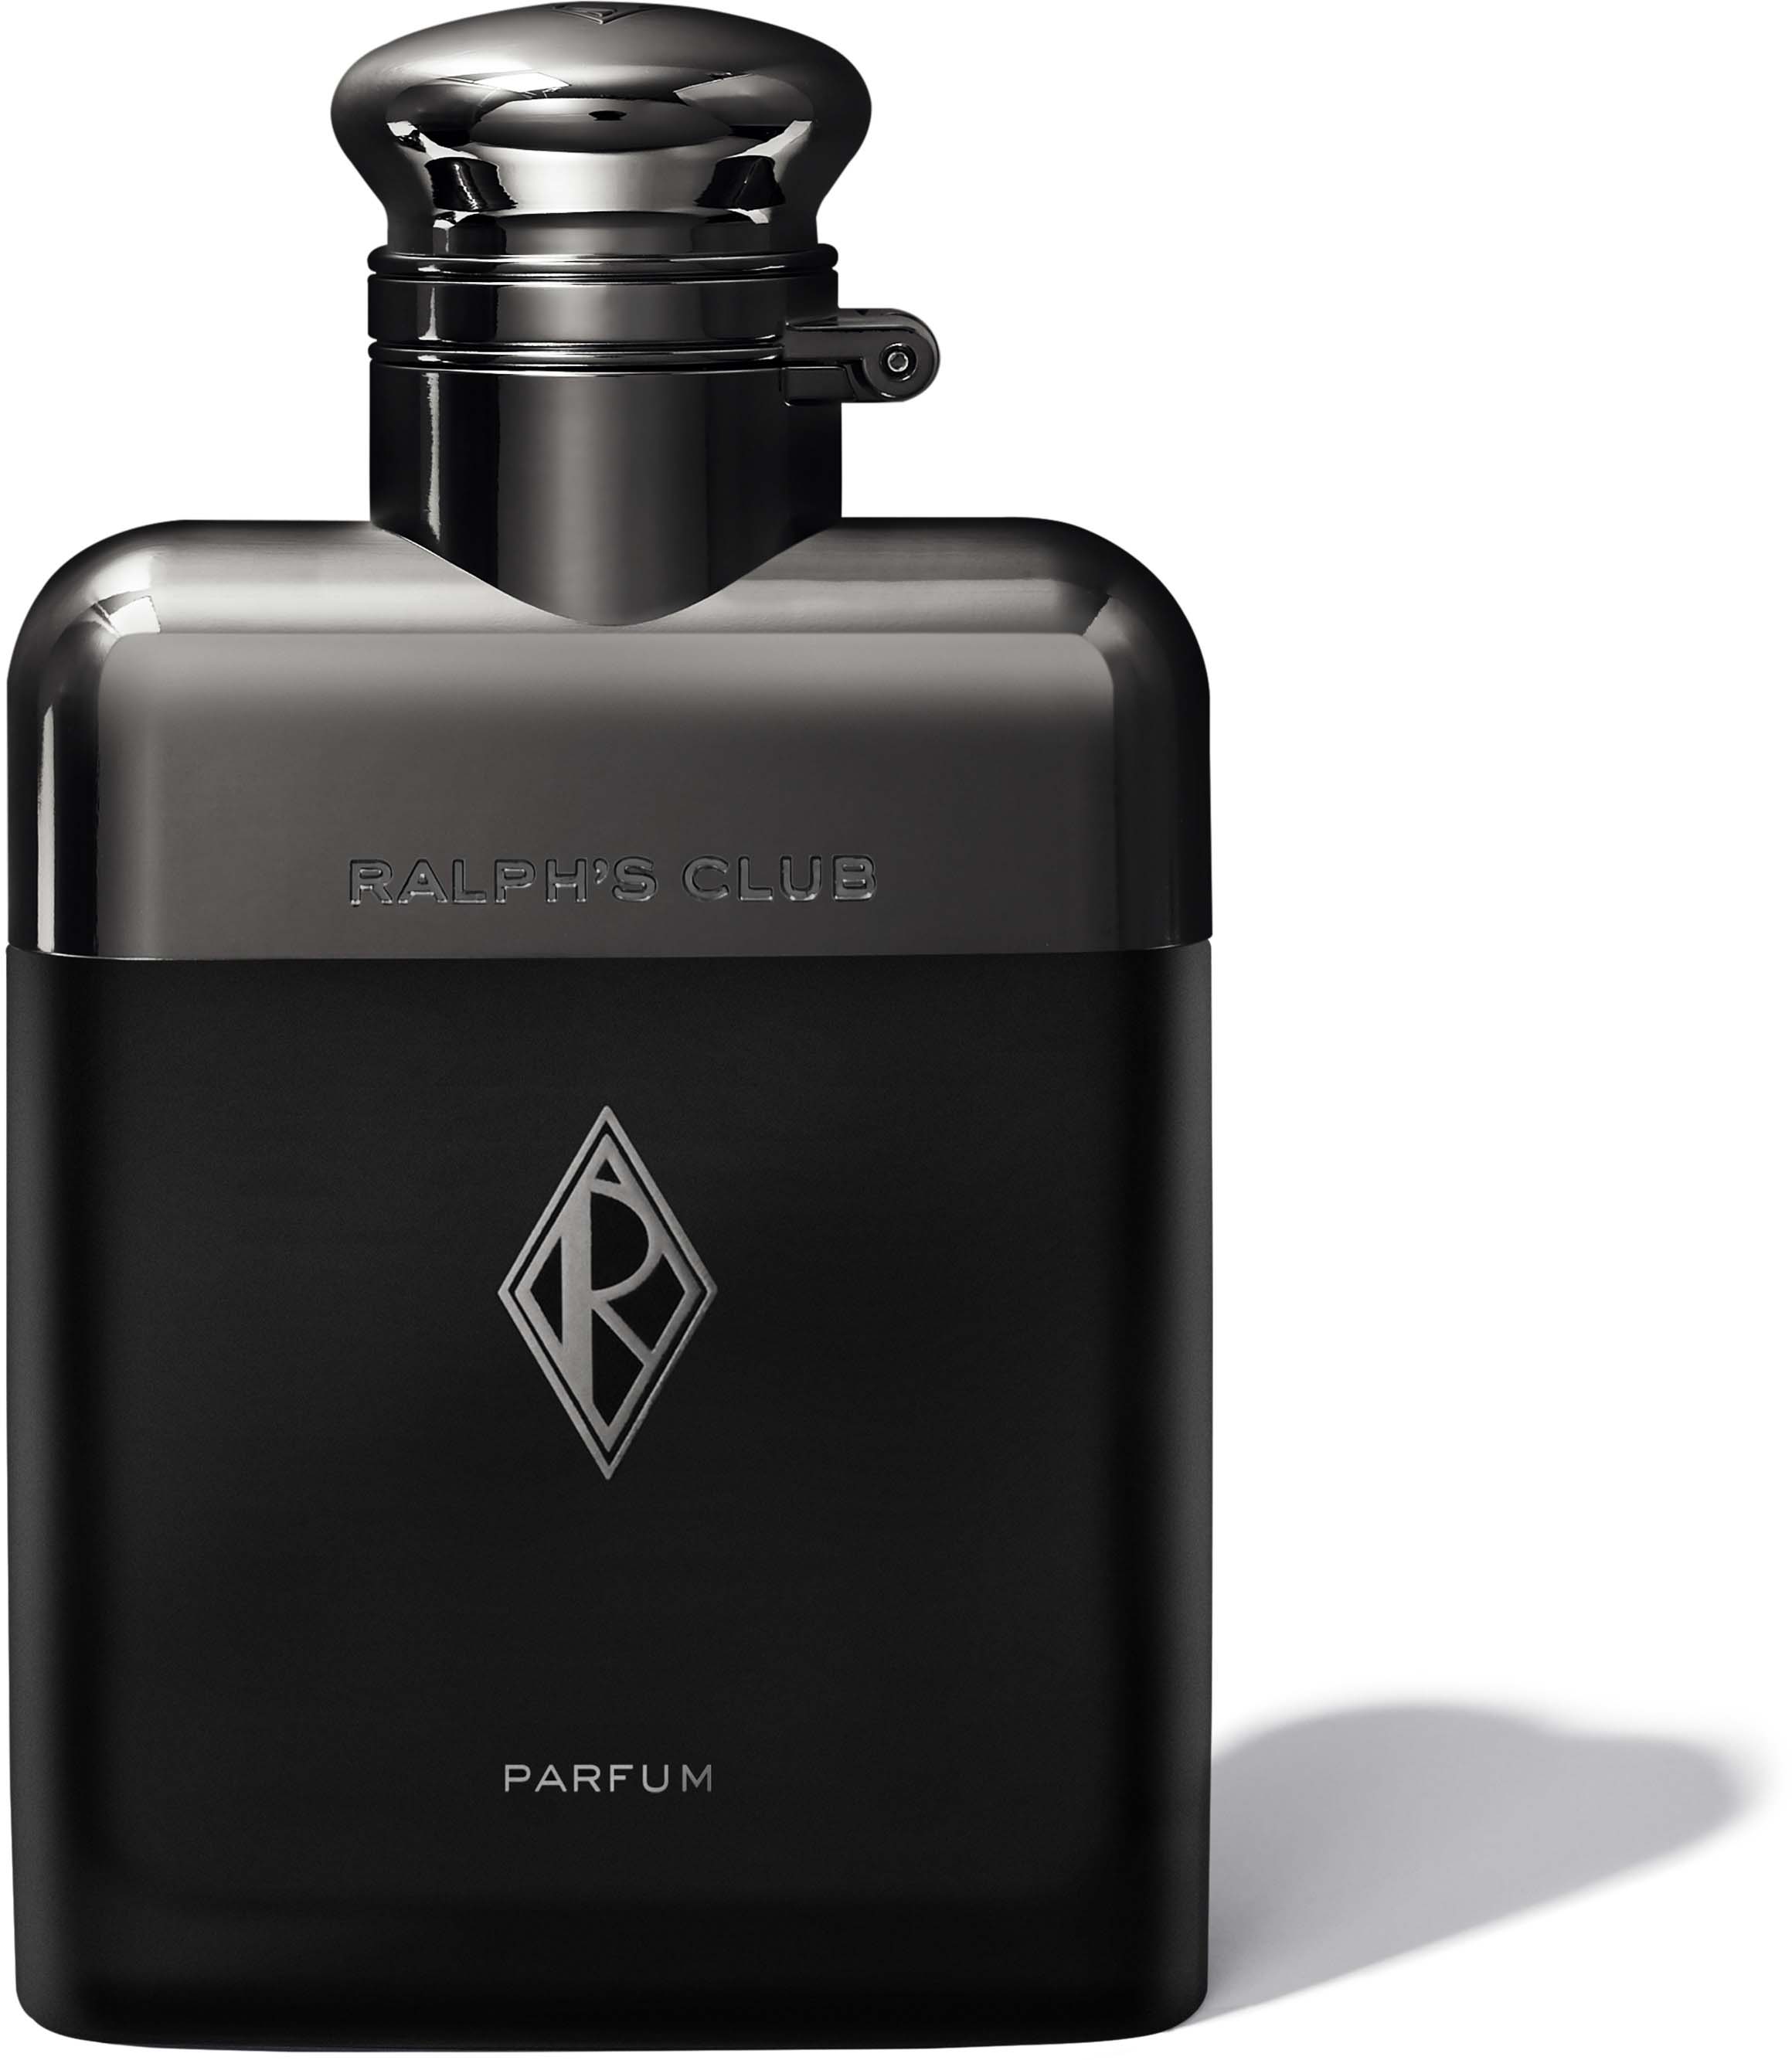 https://lyko.com/globalassets/product-images/ralph-lauren-ralphs-club-parfum-2066-180-0000_1.jpg?ref=0682E887AA